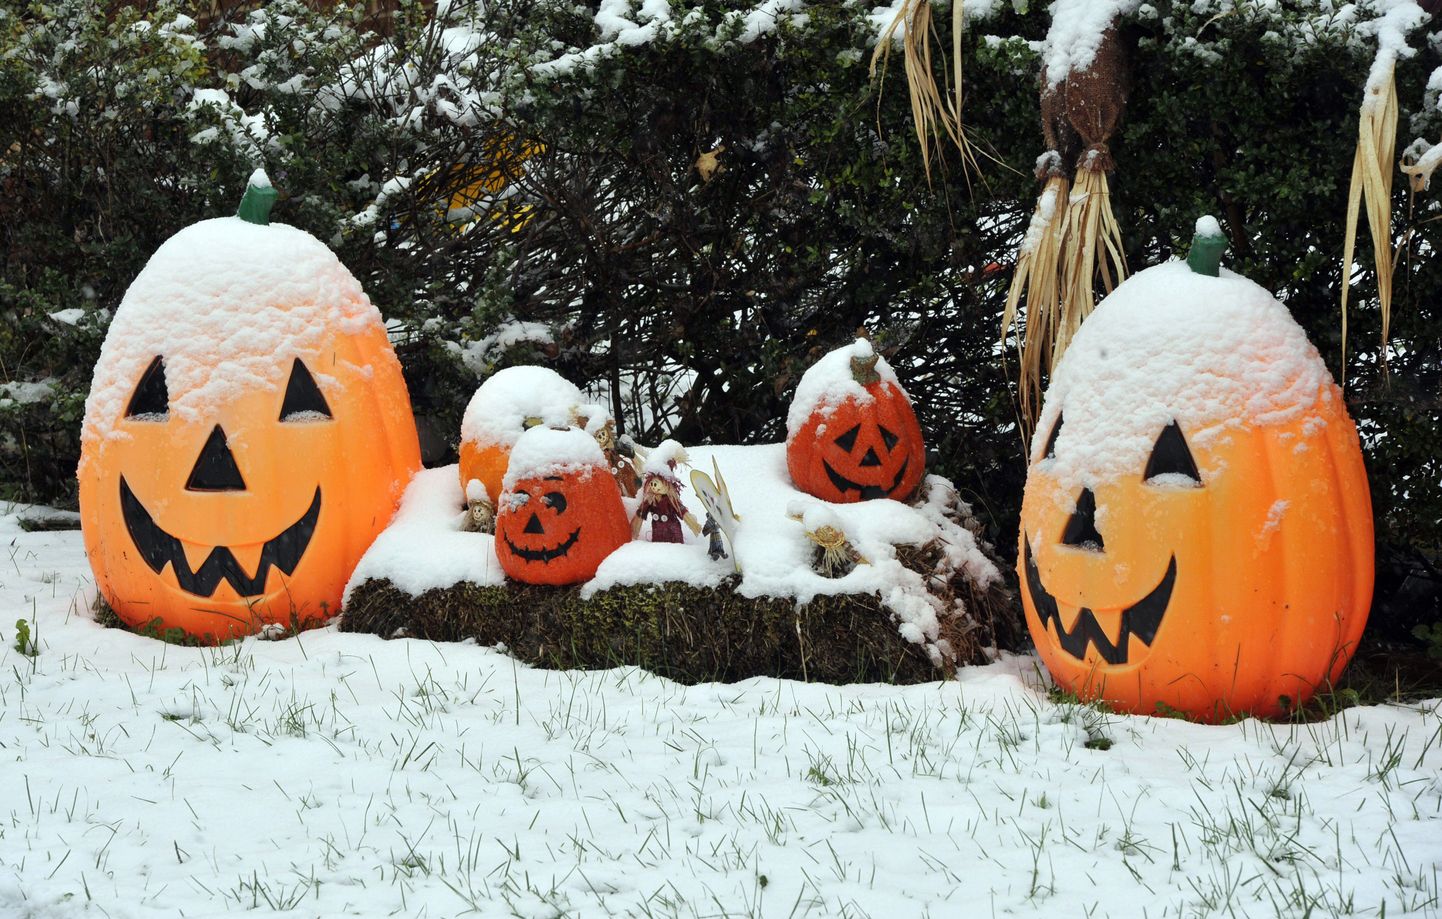 Lumega kaetud Halloweeni dekoratsioonid Westminsteri linnas Marylandis.